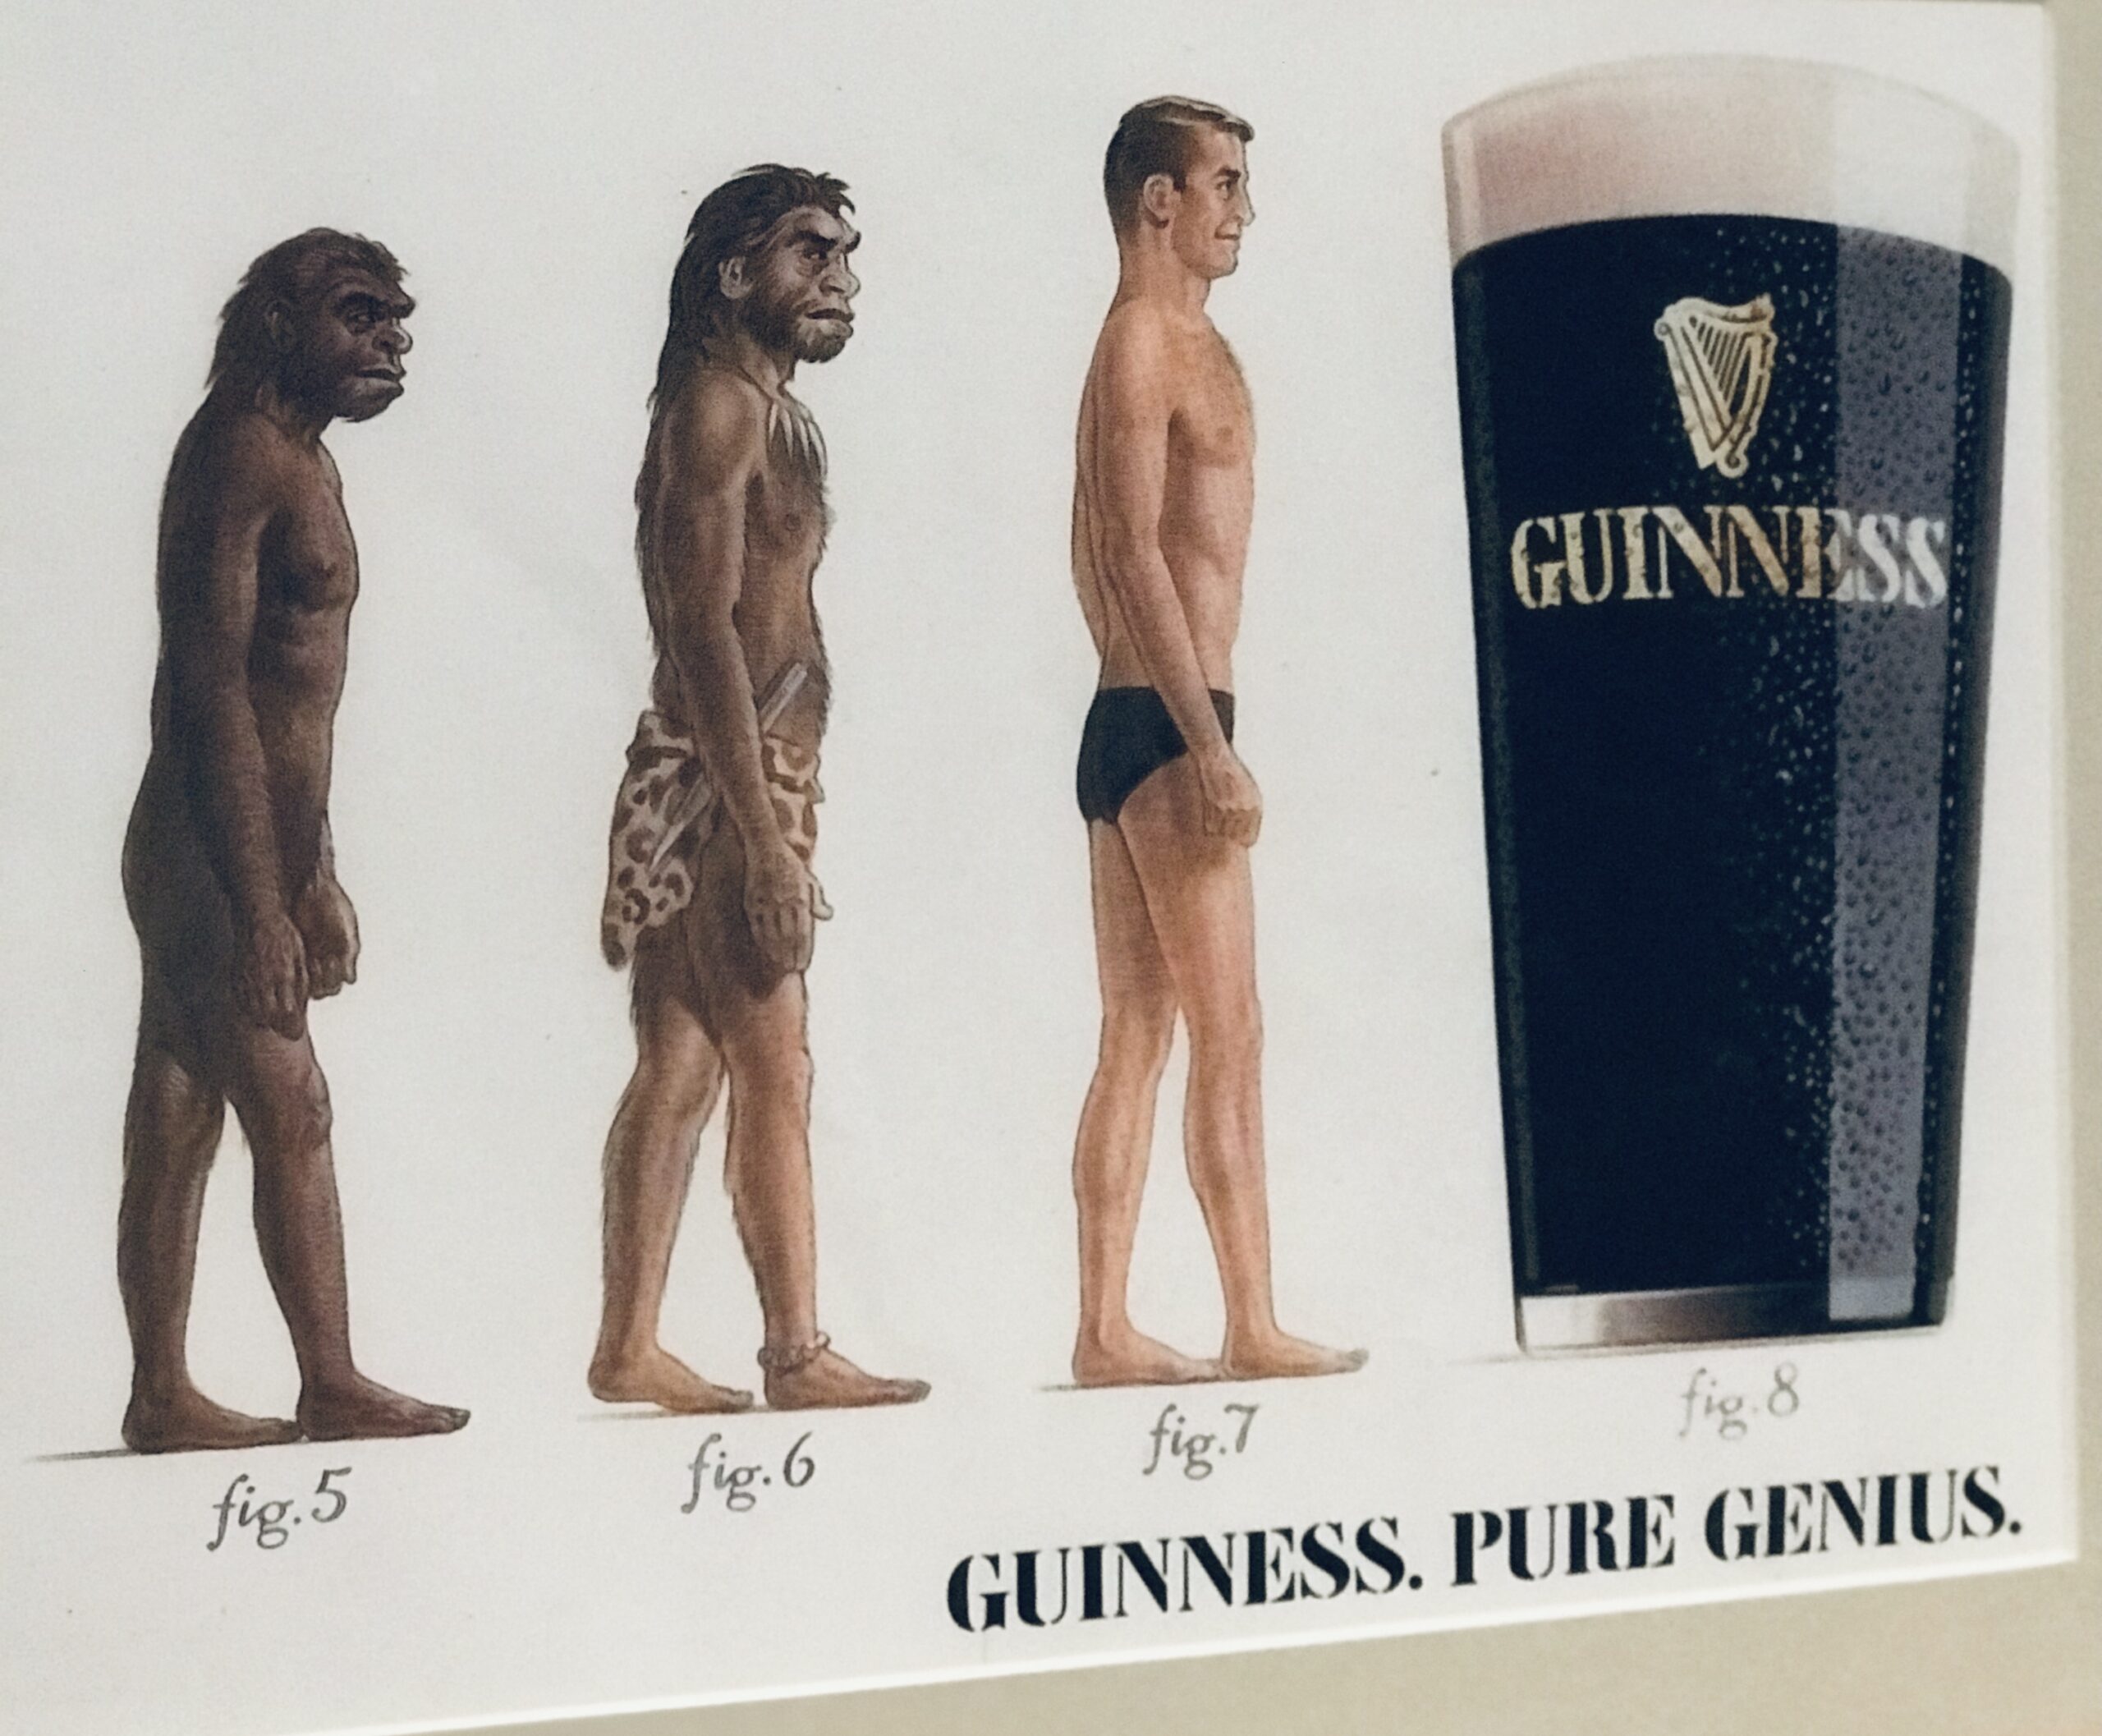 Guinness.Pure Genius Advert - The Irish Pub Emporium